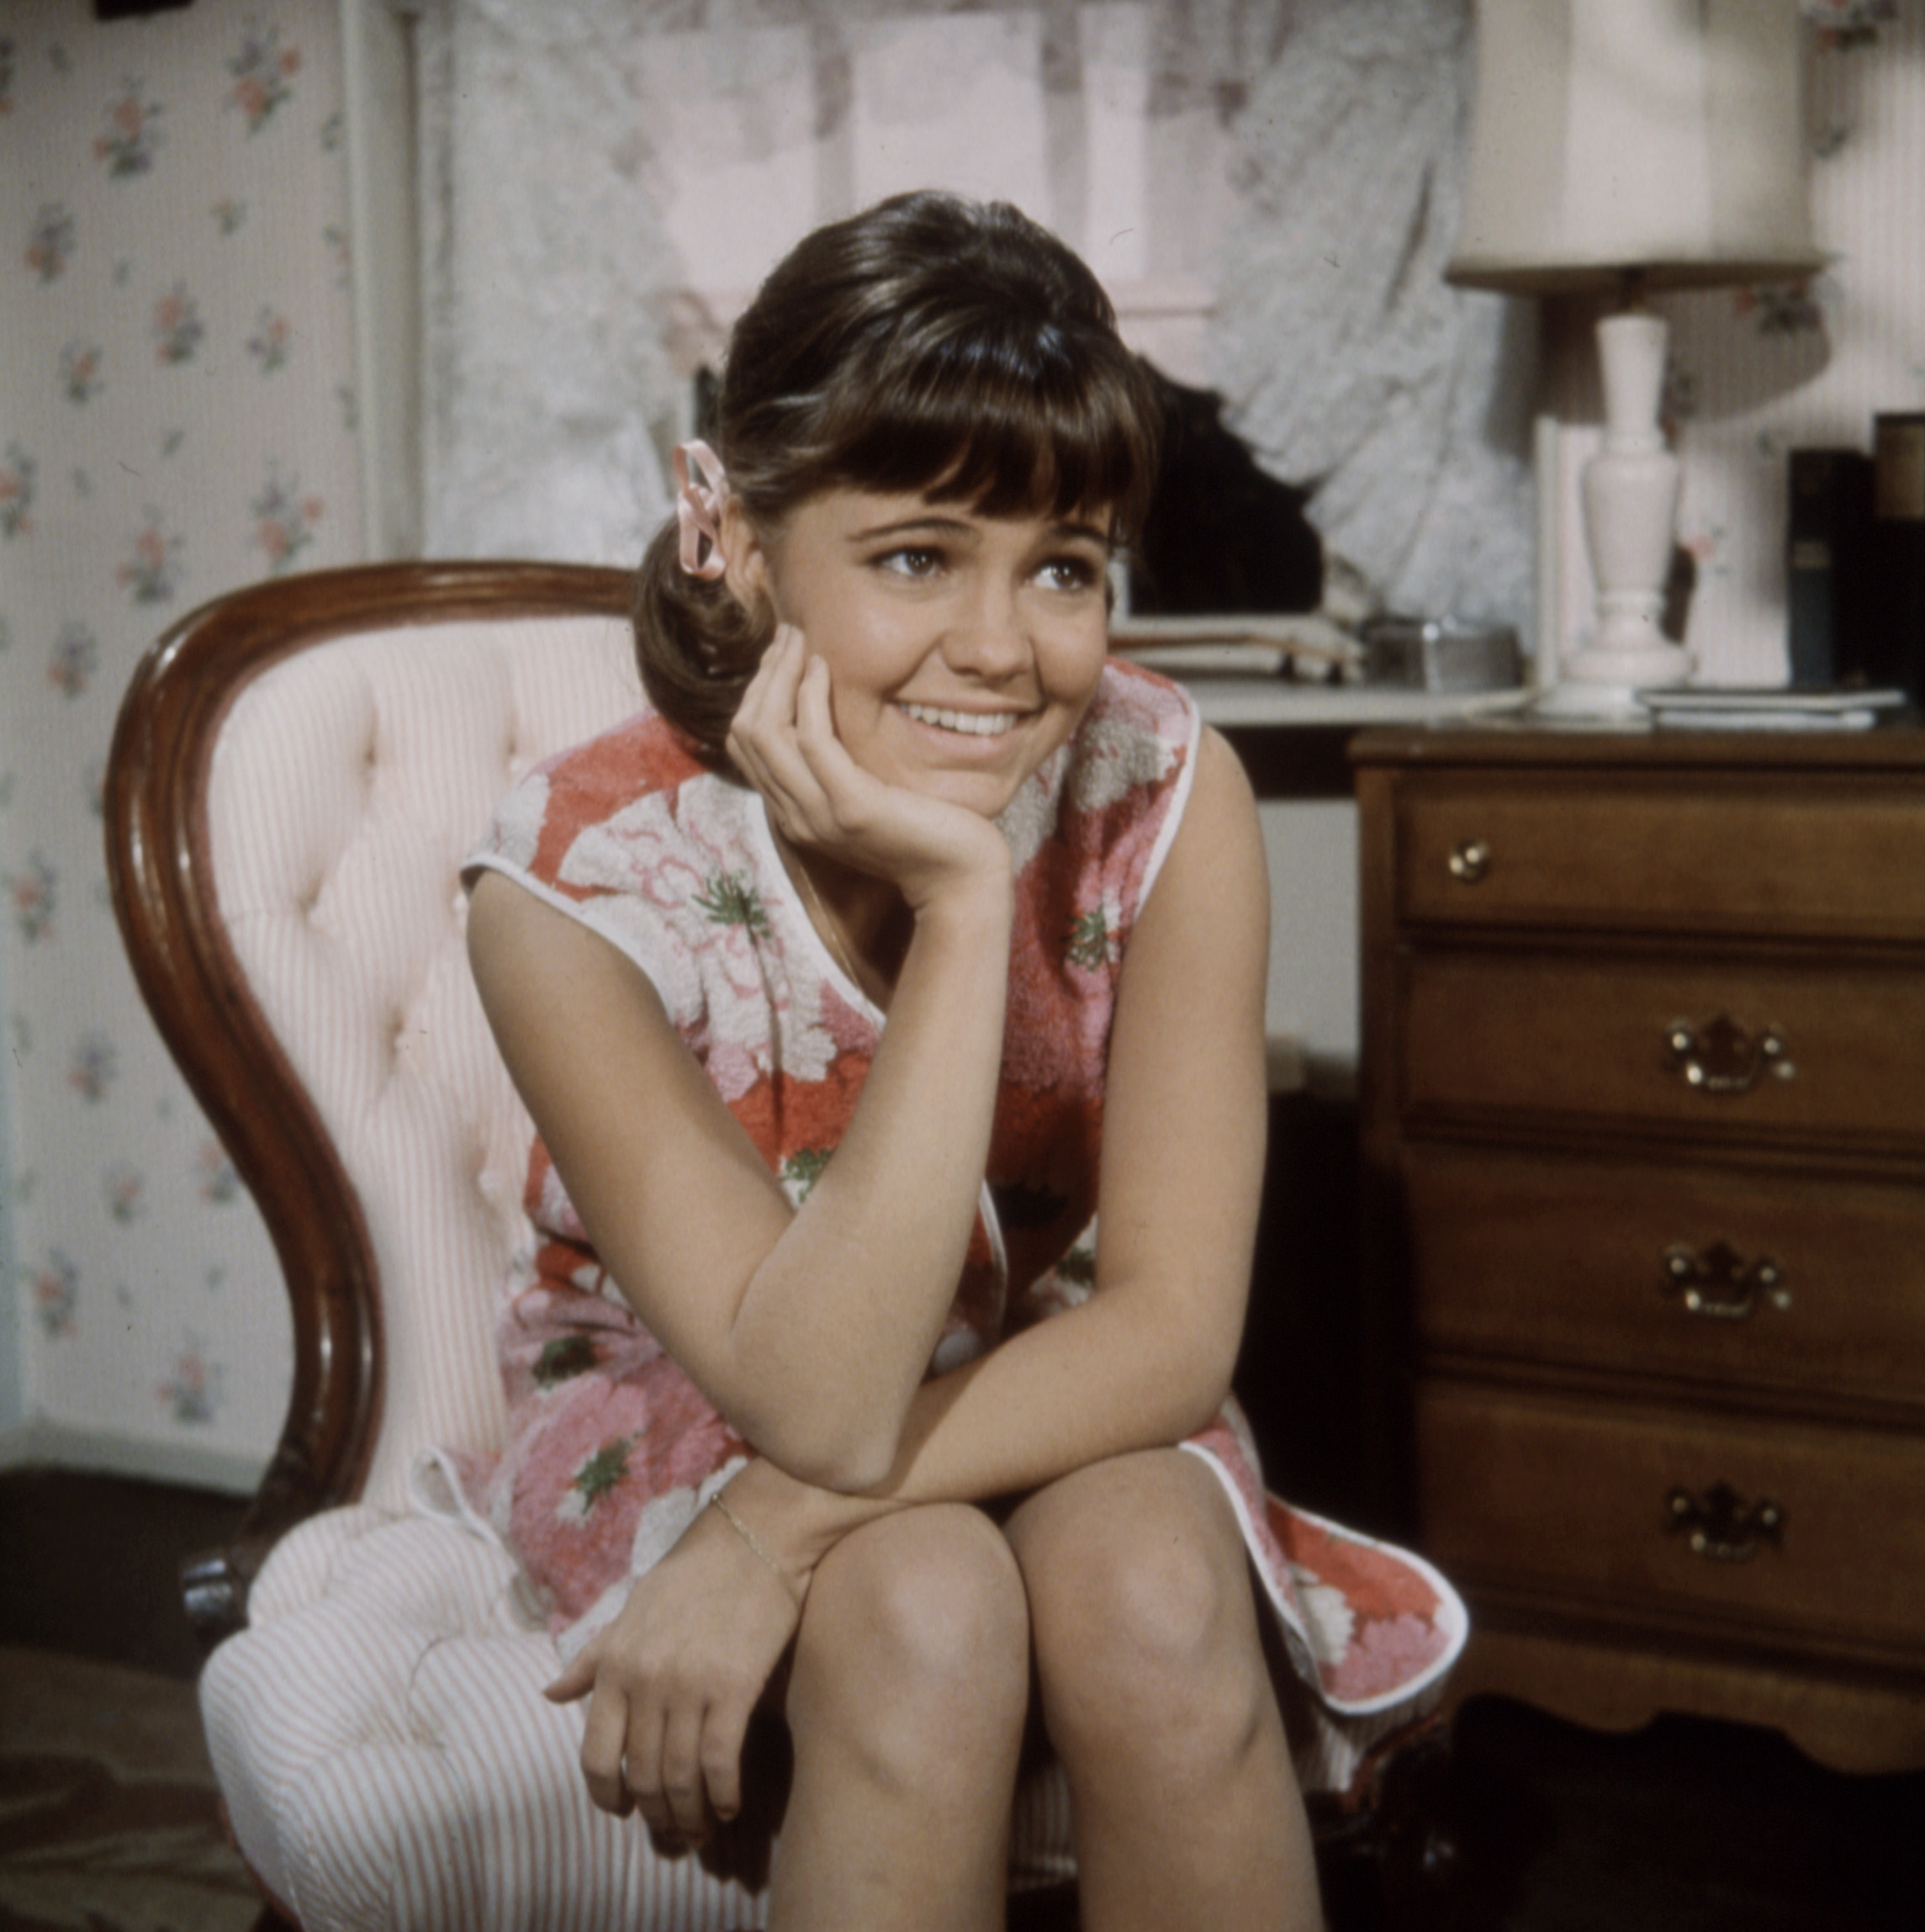 Sally Field dans le rôle de Gidget dans la série télévisée "Gidget" en 1965 à Culver City, Californie | Source : Getty Images